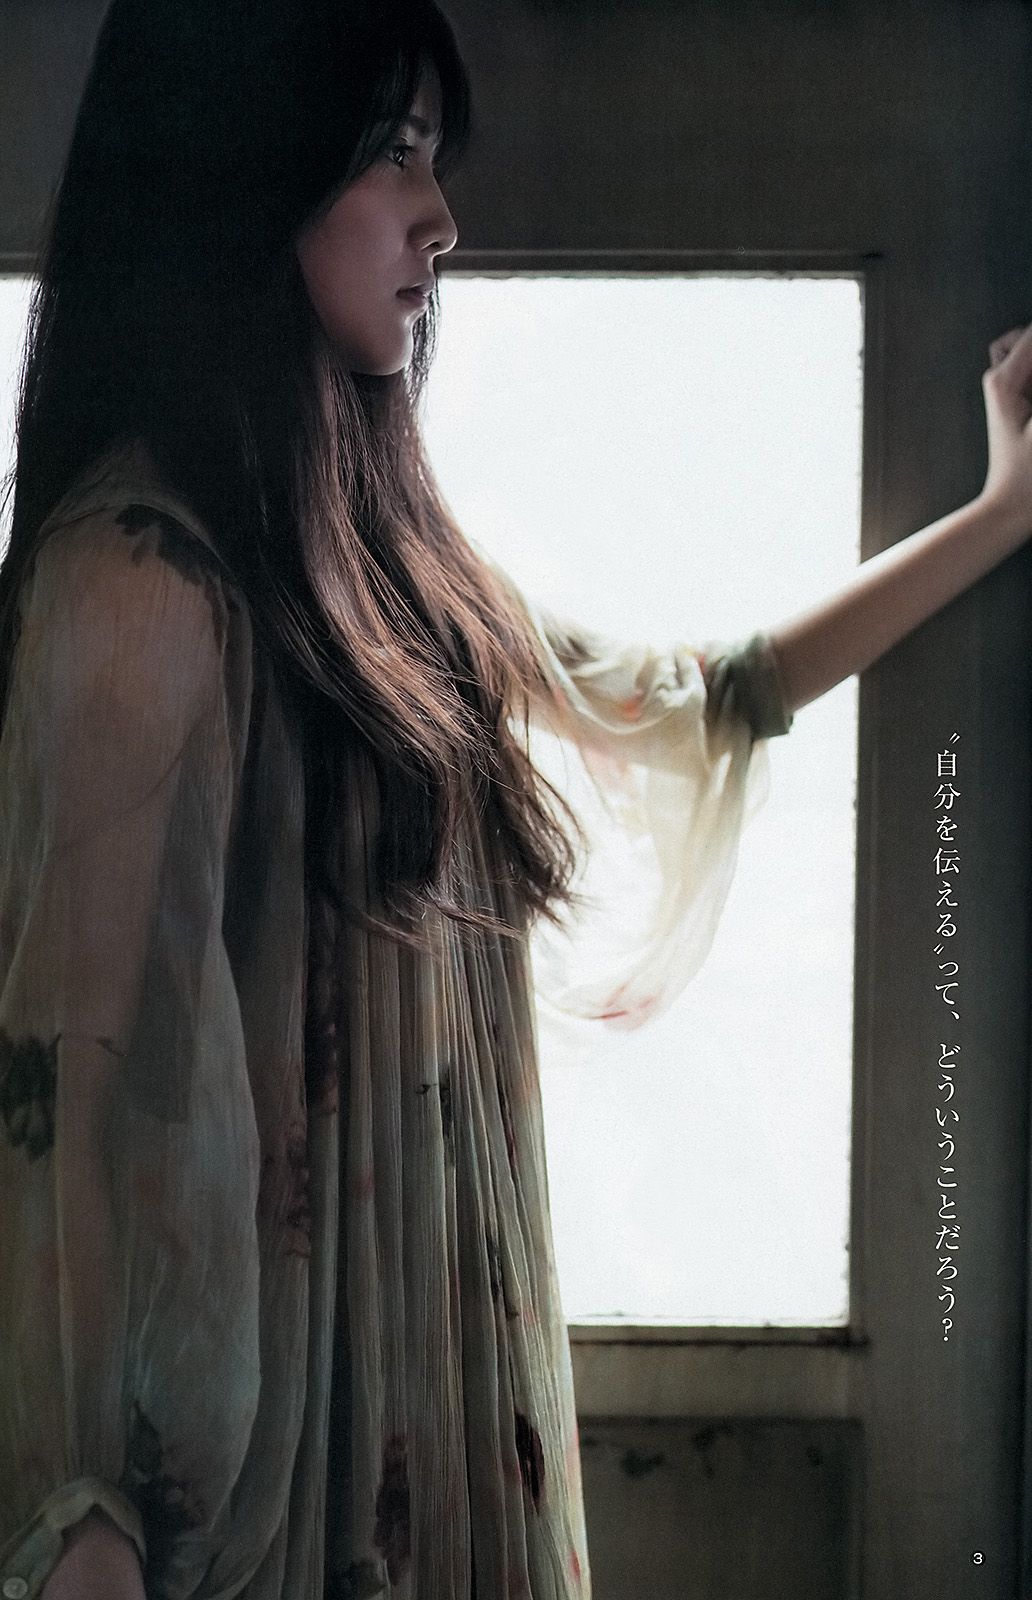 [NS Eyes] SF-Nr. 148 Erika Ito Erika Ito / Erika Ito Seite 3 No.e876d6